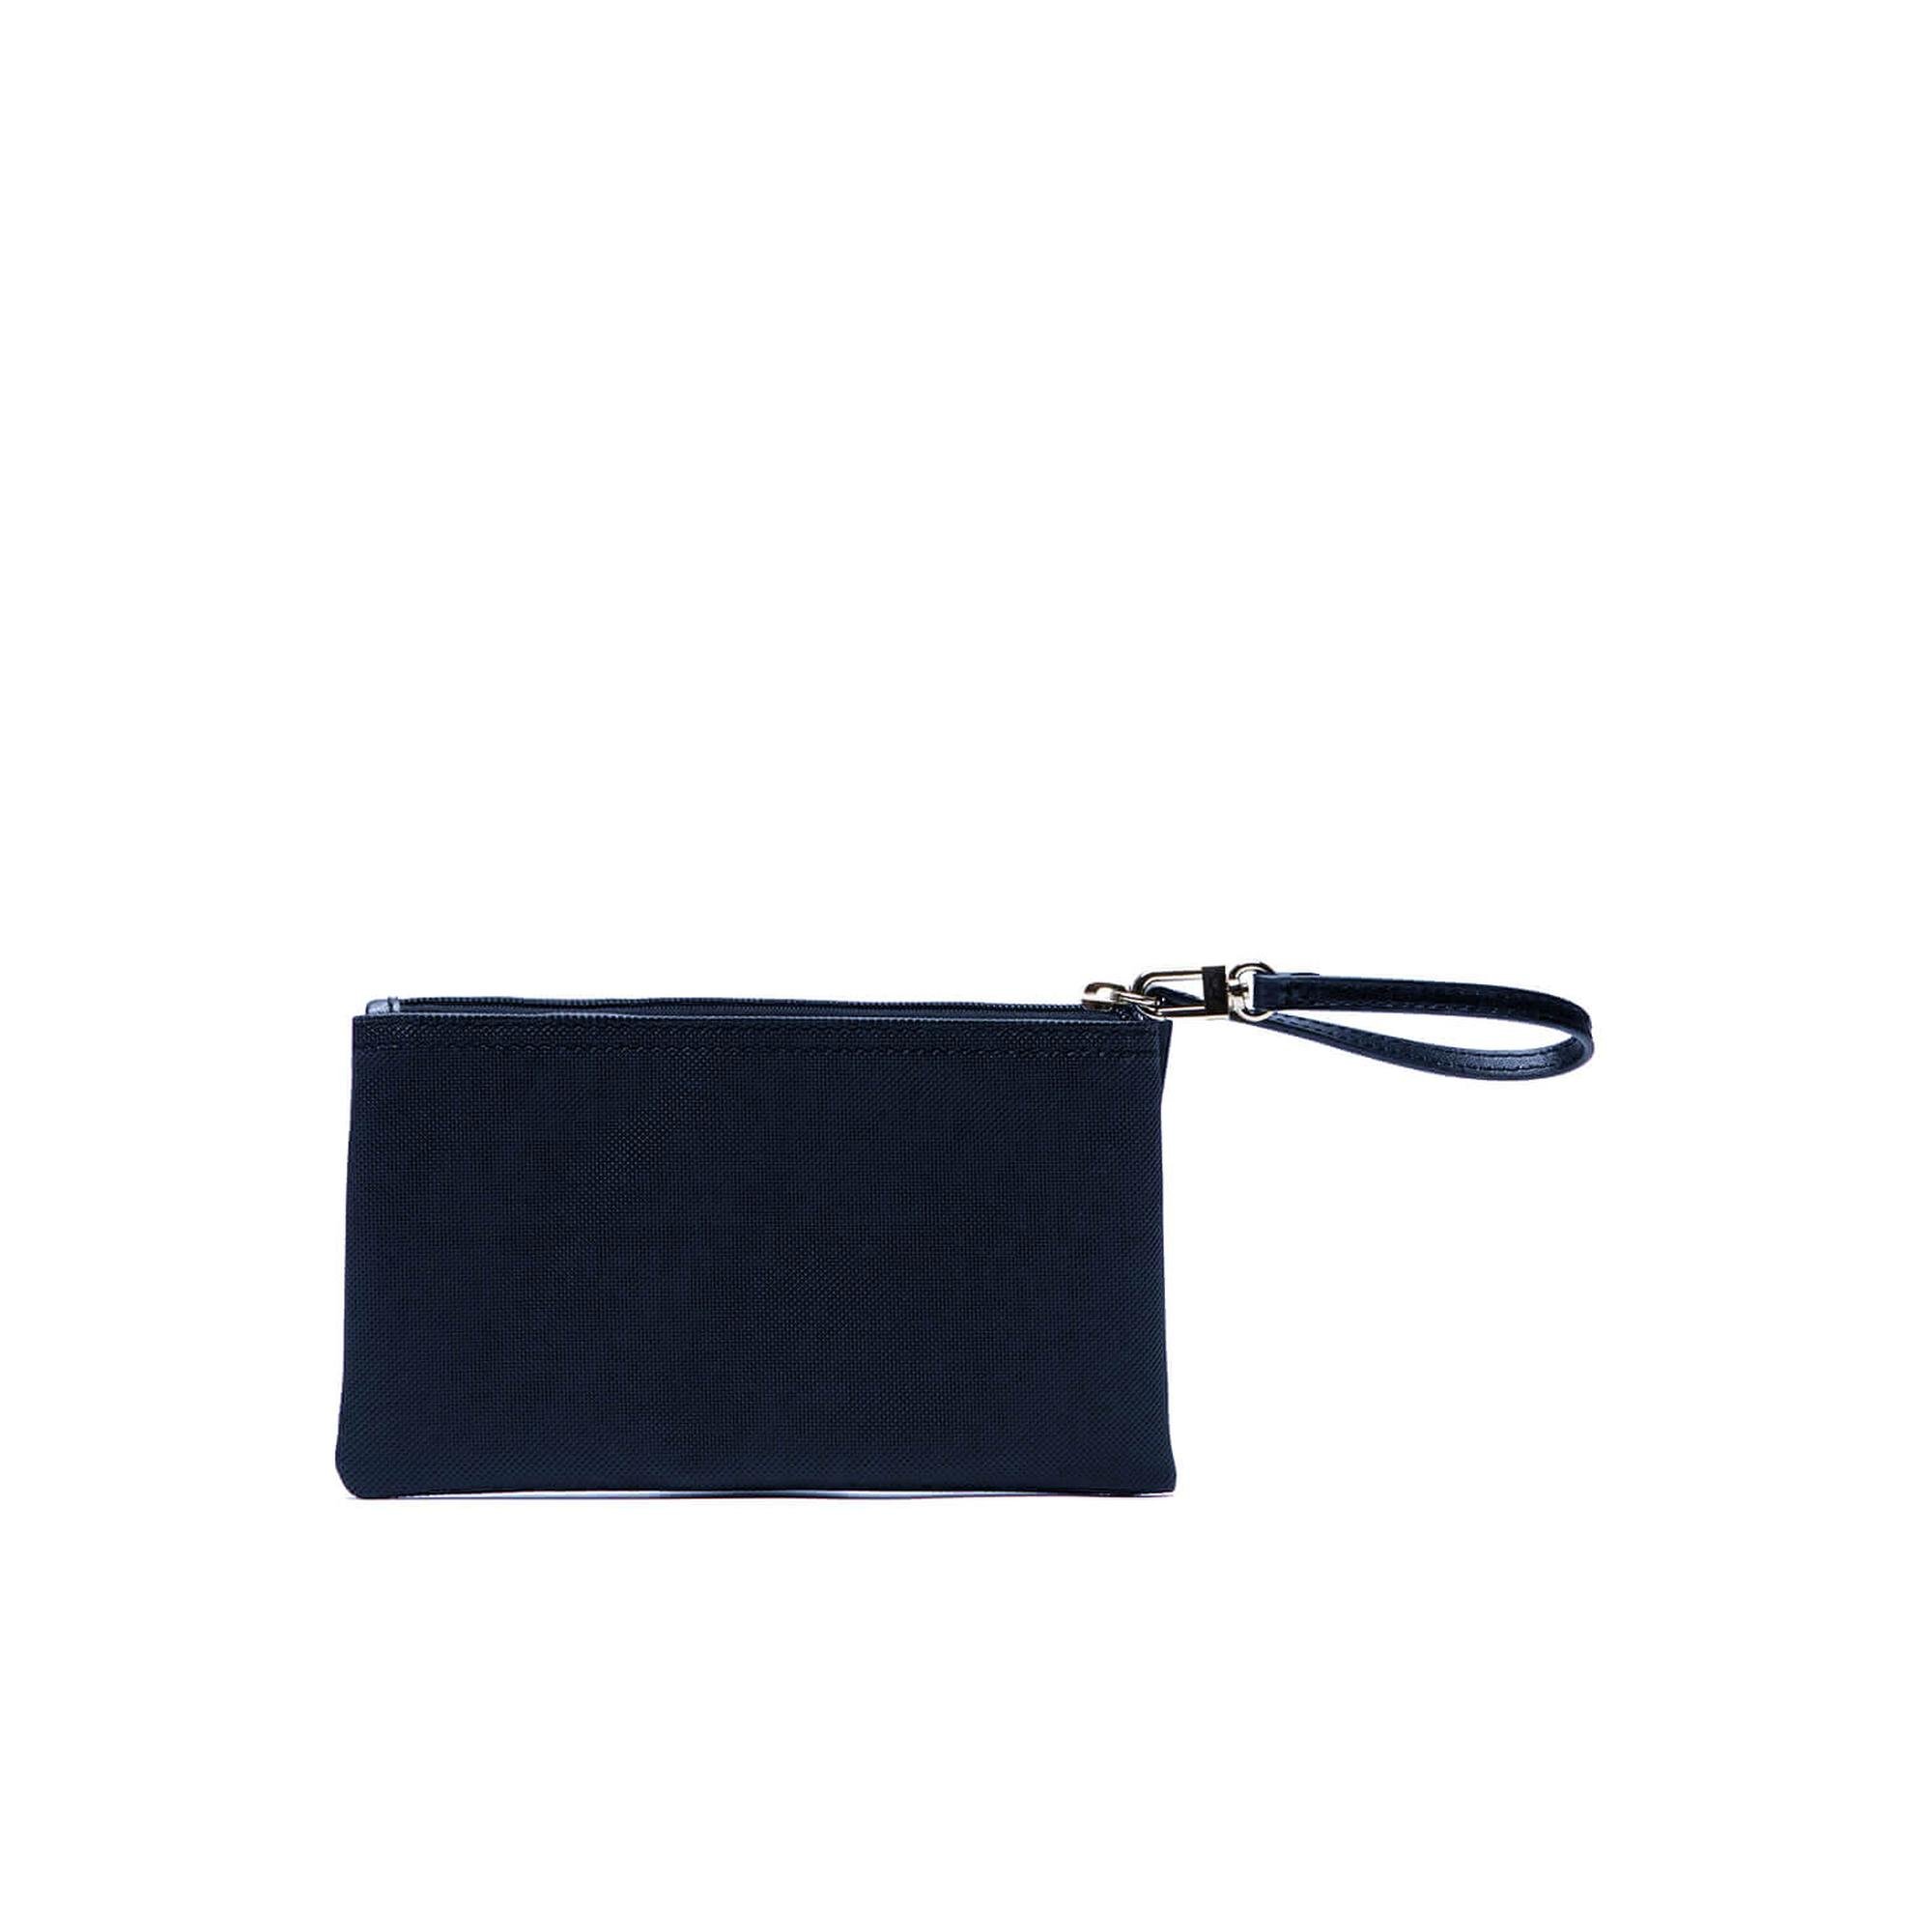 Lacoste Women's L.12.12 Concept Zip Clutch Bag